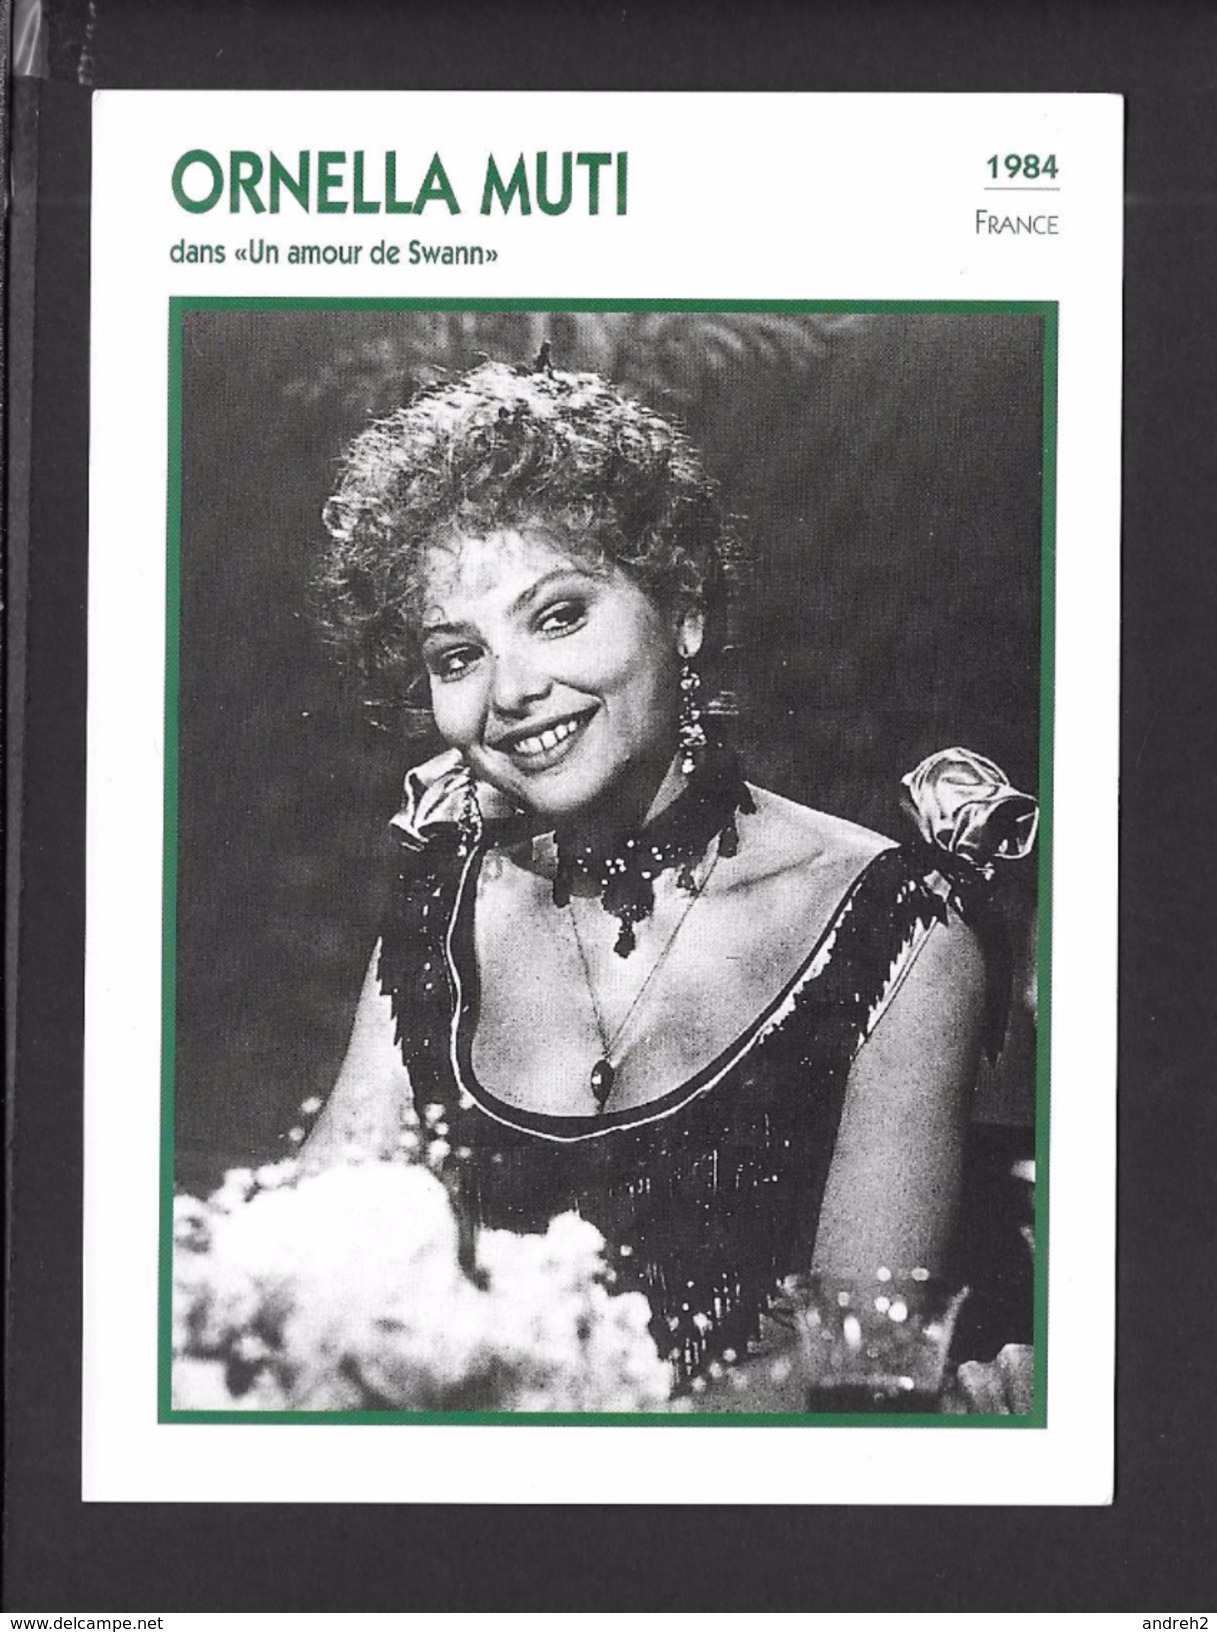 ACTEURS - ACTRICES - CINÉMA - ORNELLA MUTI - 1984 FRANCE DANS UN AMOUR DE SWANN - Actors